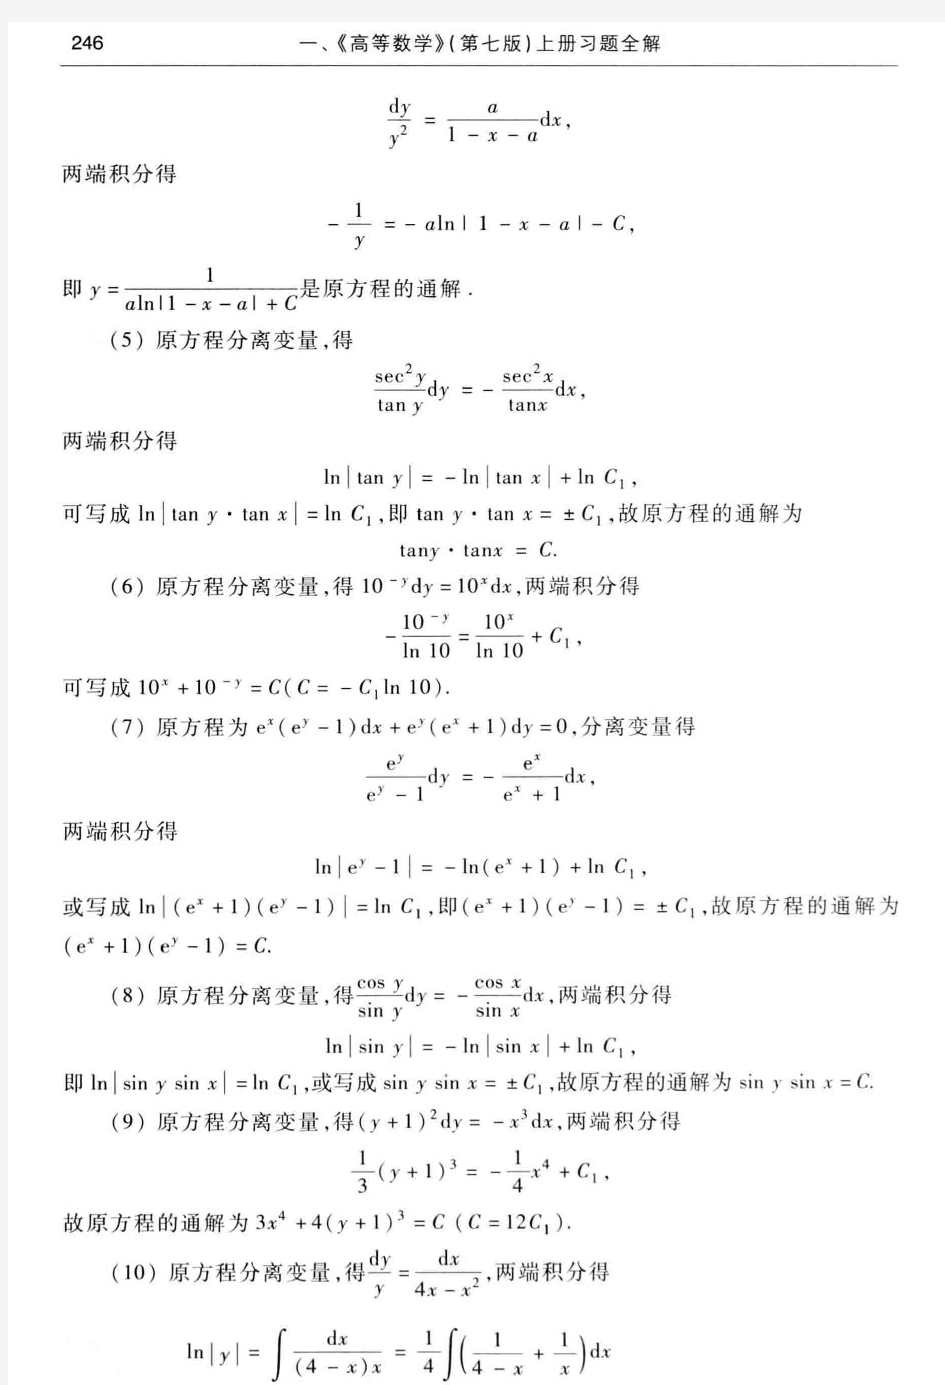 高等数学答案(第七版下册)习题7-2可分离变量的微分方程答案